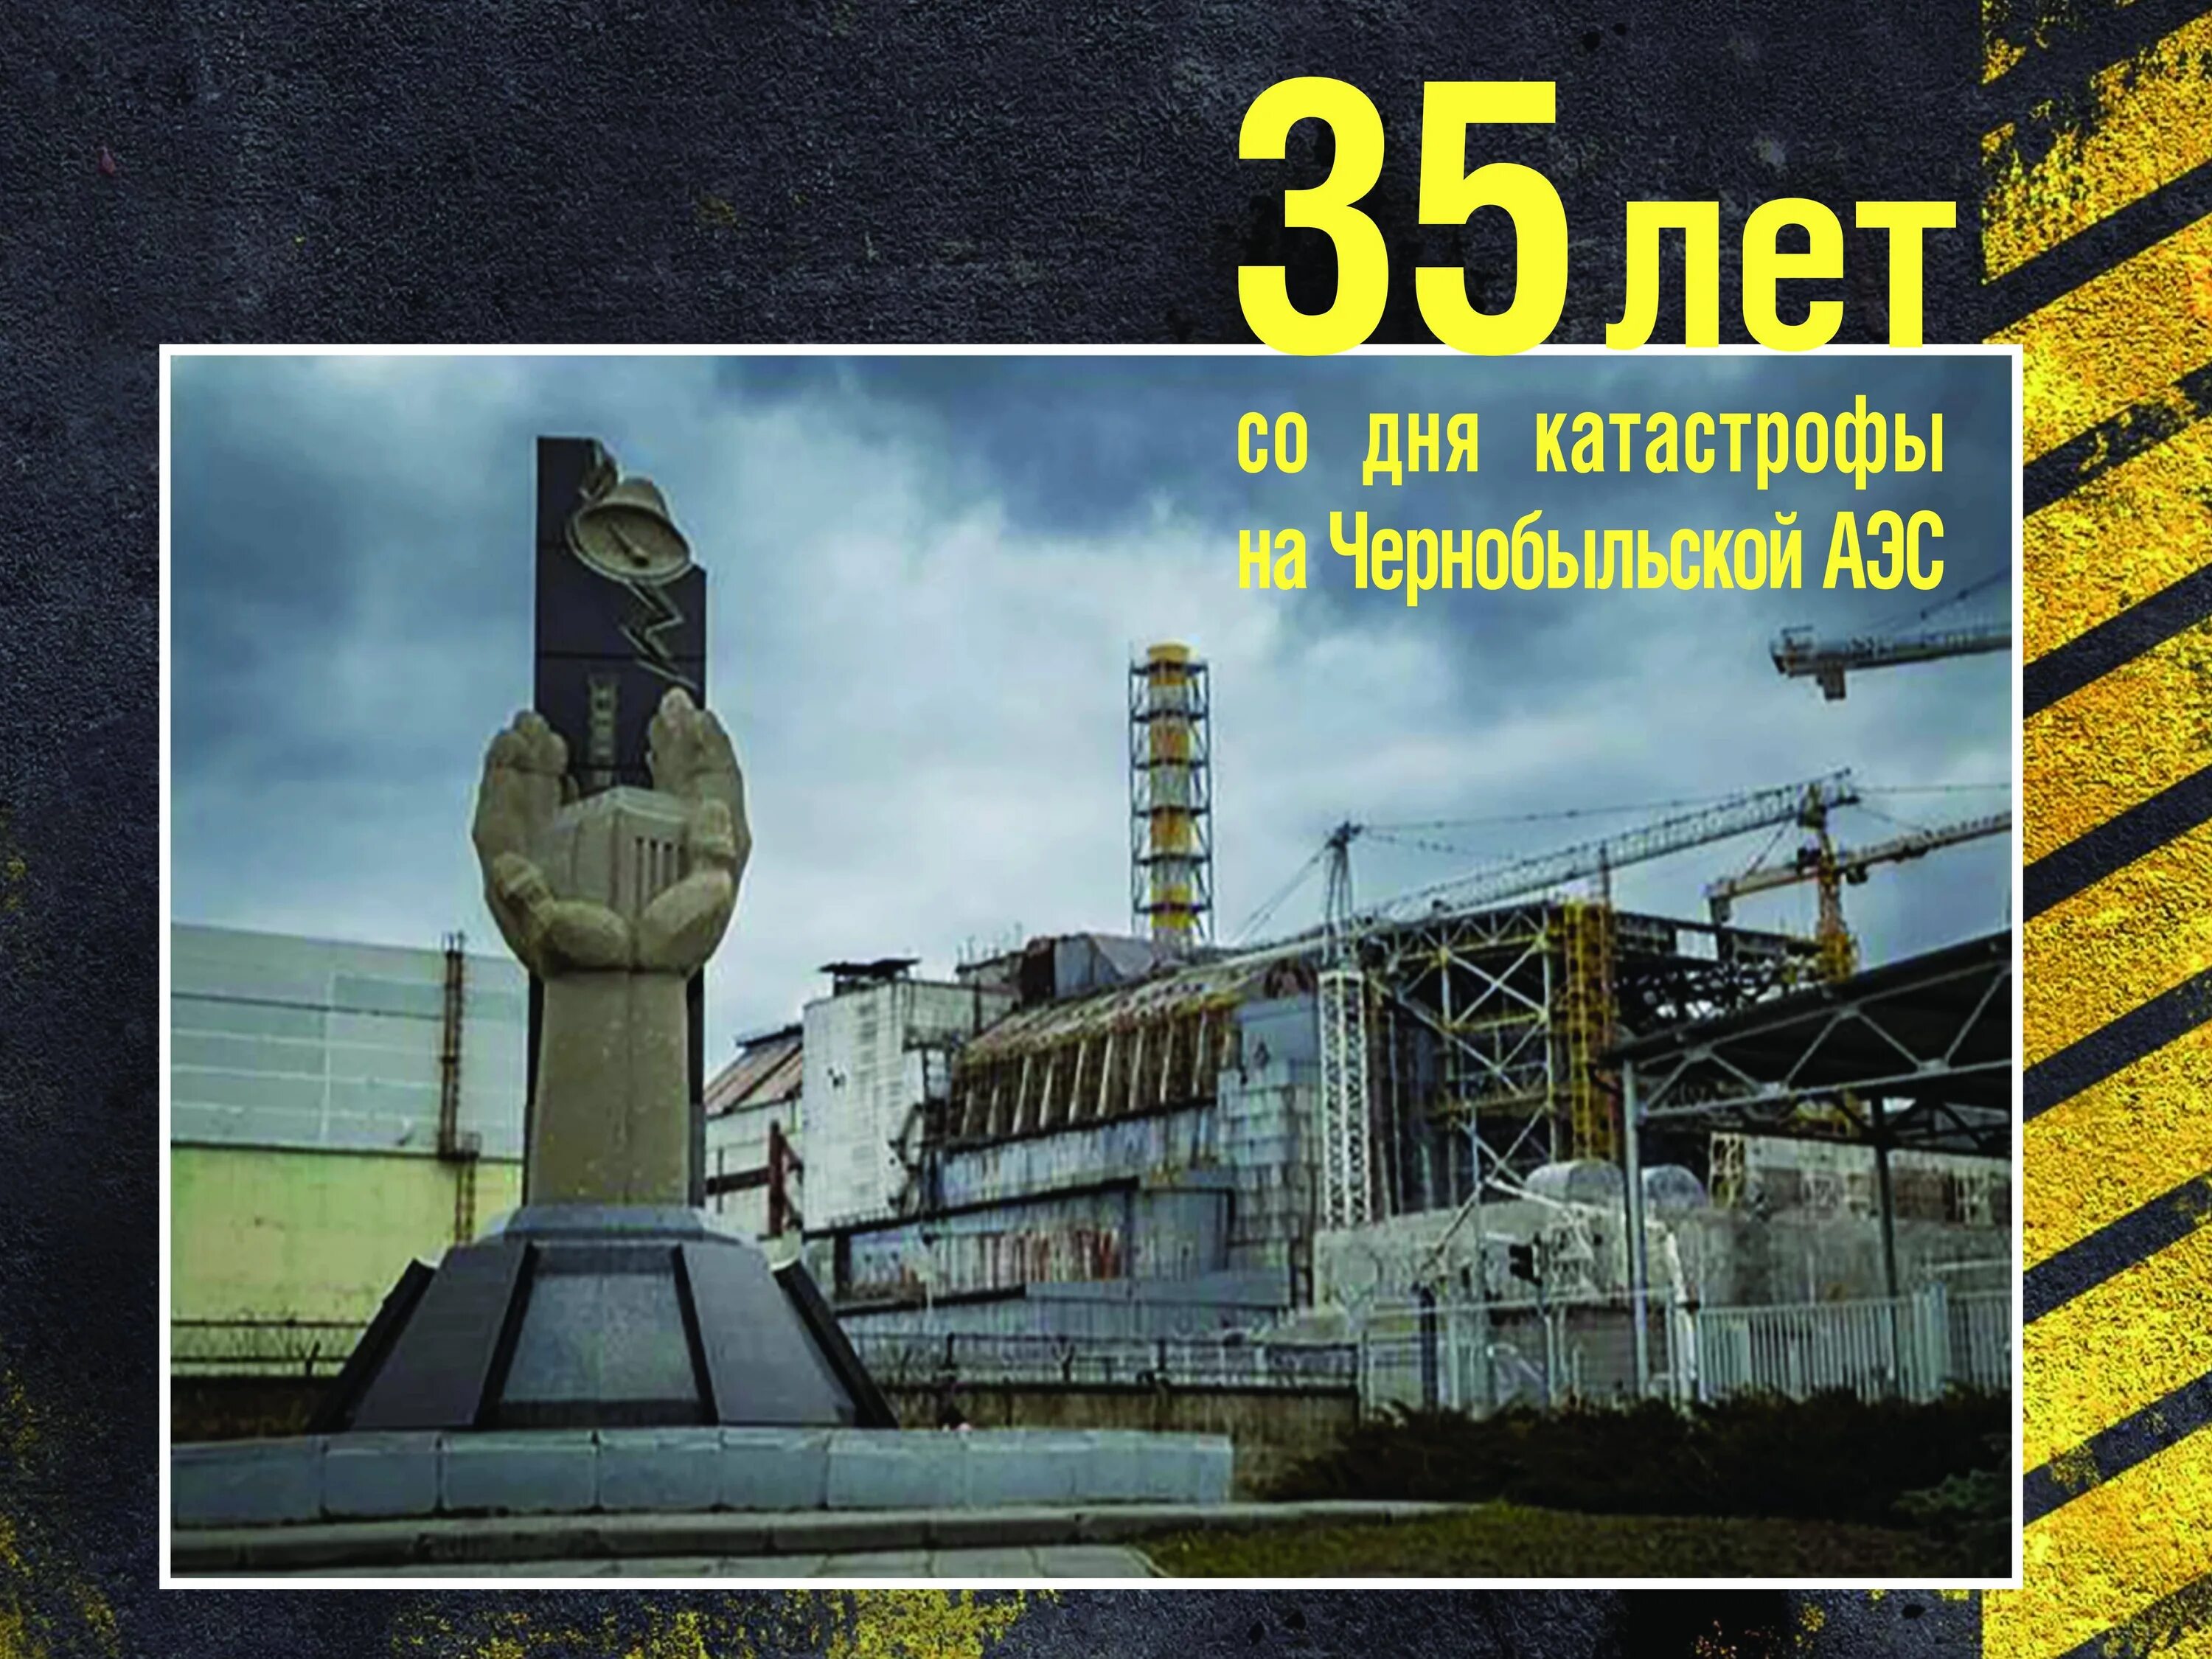 26 Апреля 1986 день памяти Чернобыльской АЭС. Чернобыль взрыв атомной станции 1986. ЧАЭС 26.04.1986. 35 Лет со дня аварии на Чернобыльской АЭС. Авария на чернобыльской аэс история